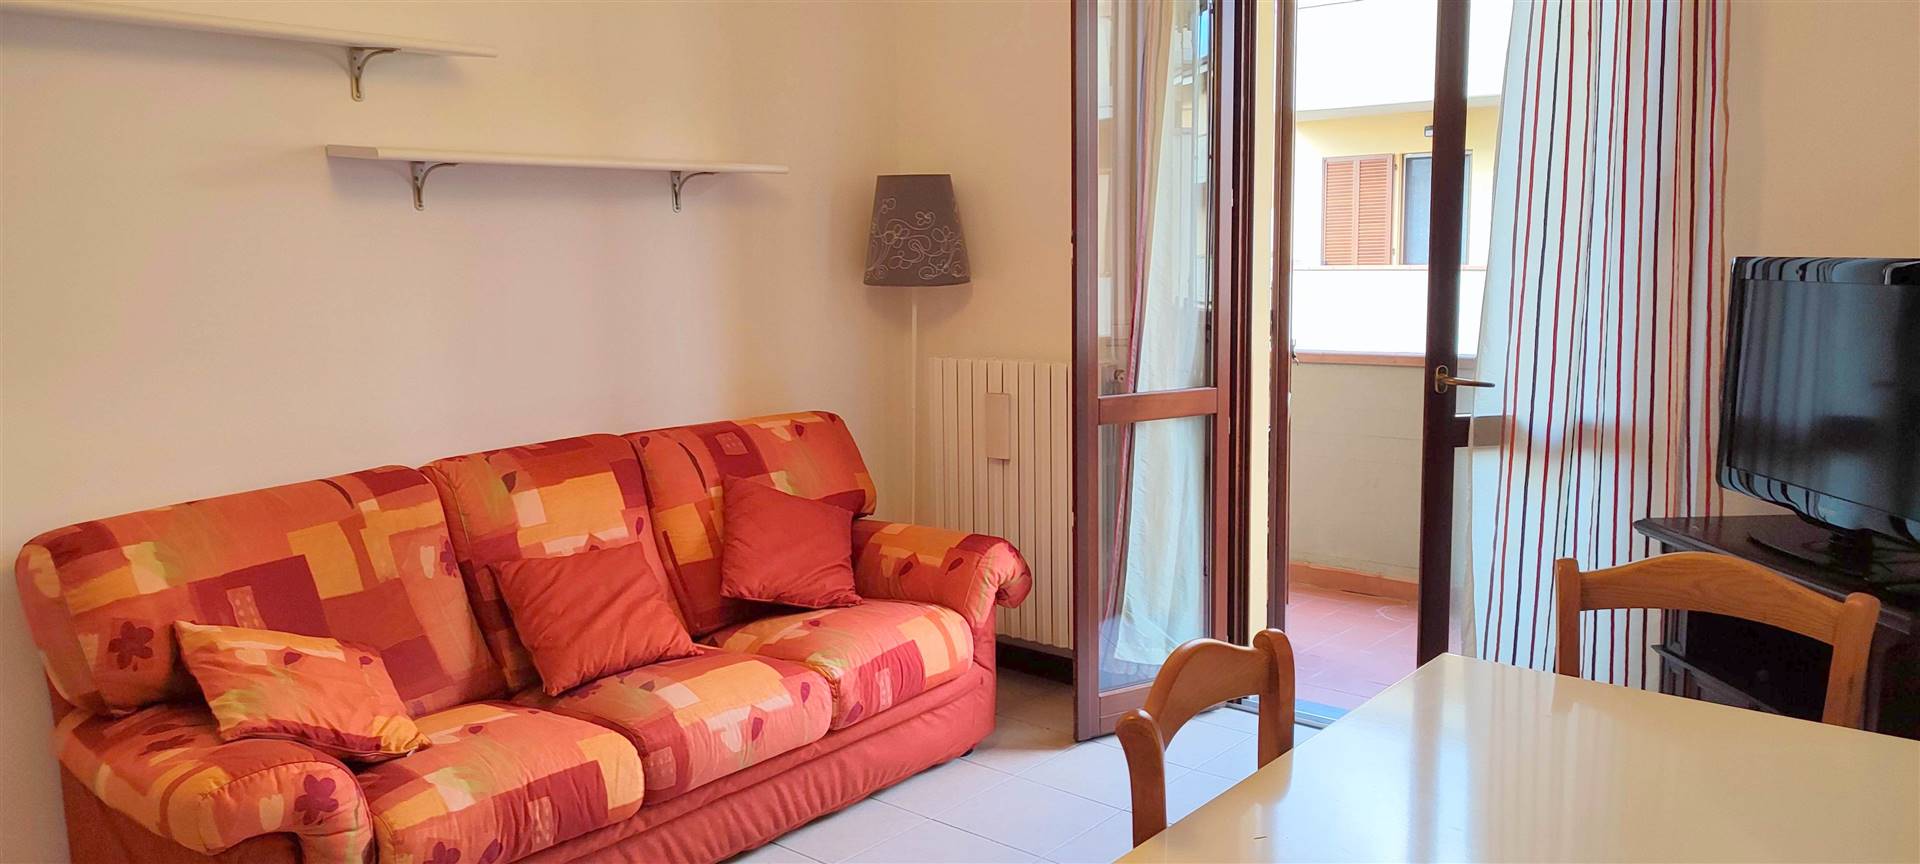 Appartamento in vendita a Serravalle Pistoiese, 2 locali, zona e di Serravalle, prezzo € 88.000 | PortaleAgenzieImmobiliari.it